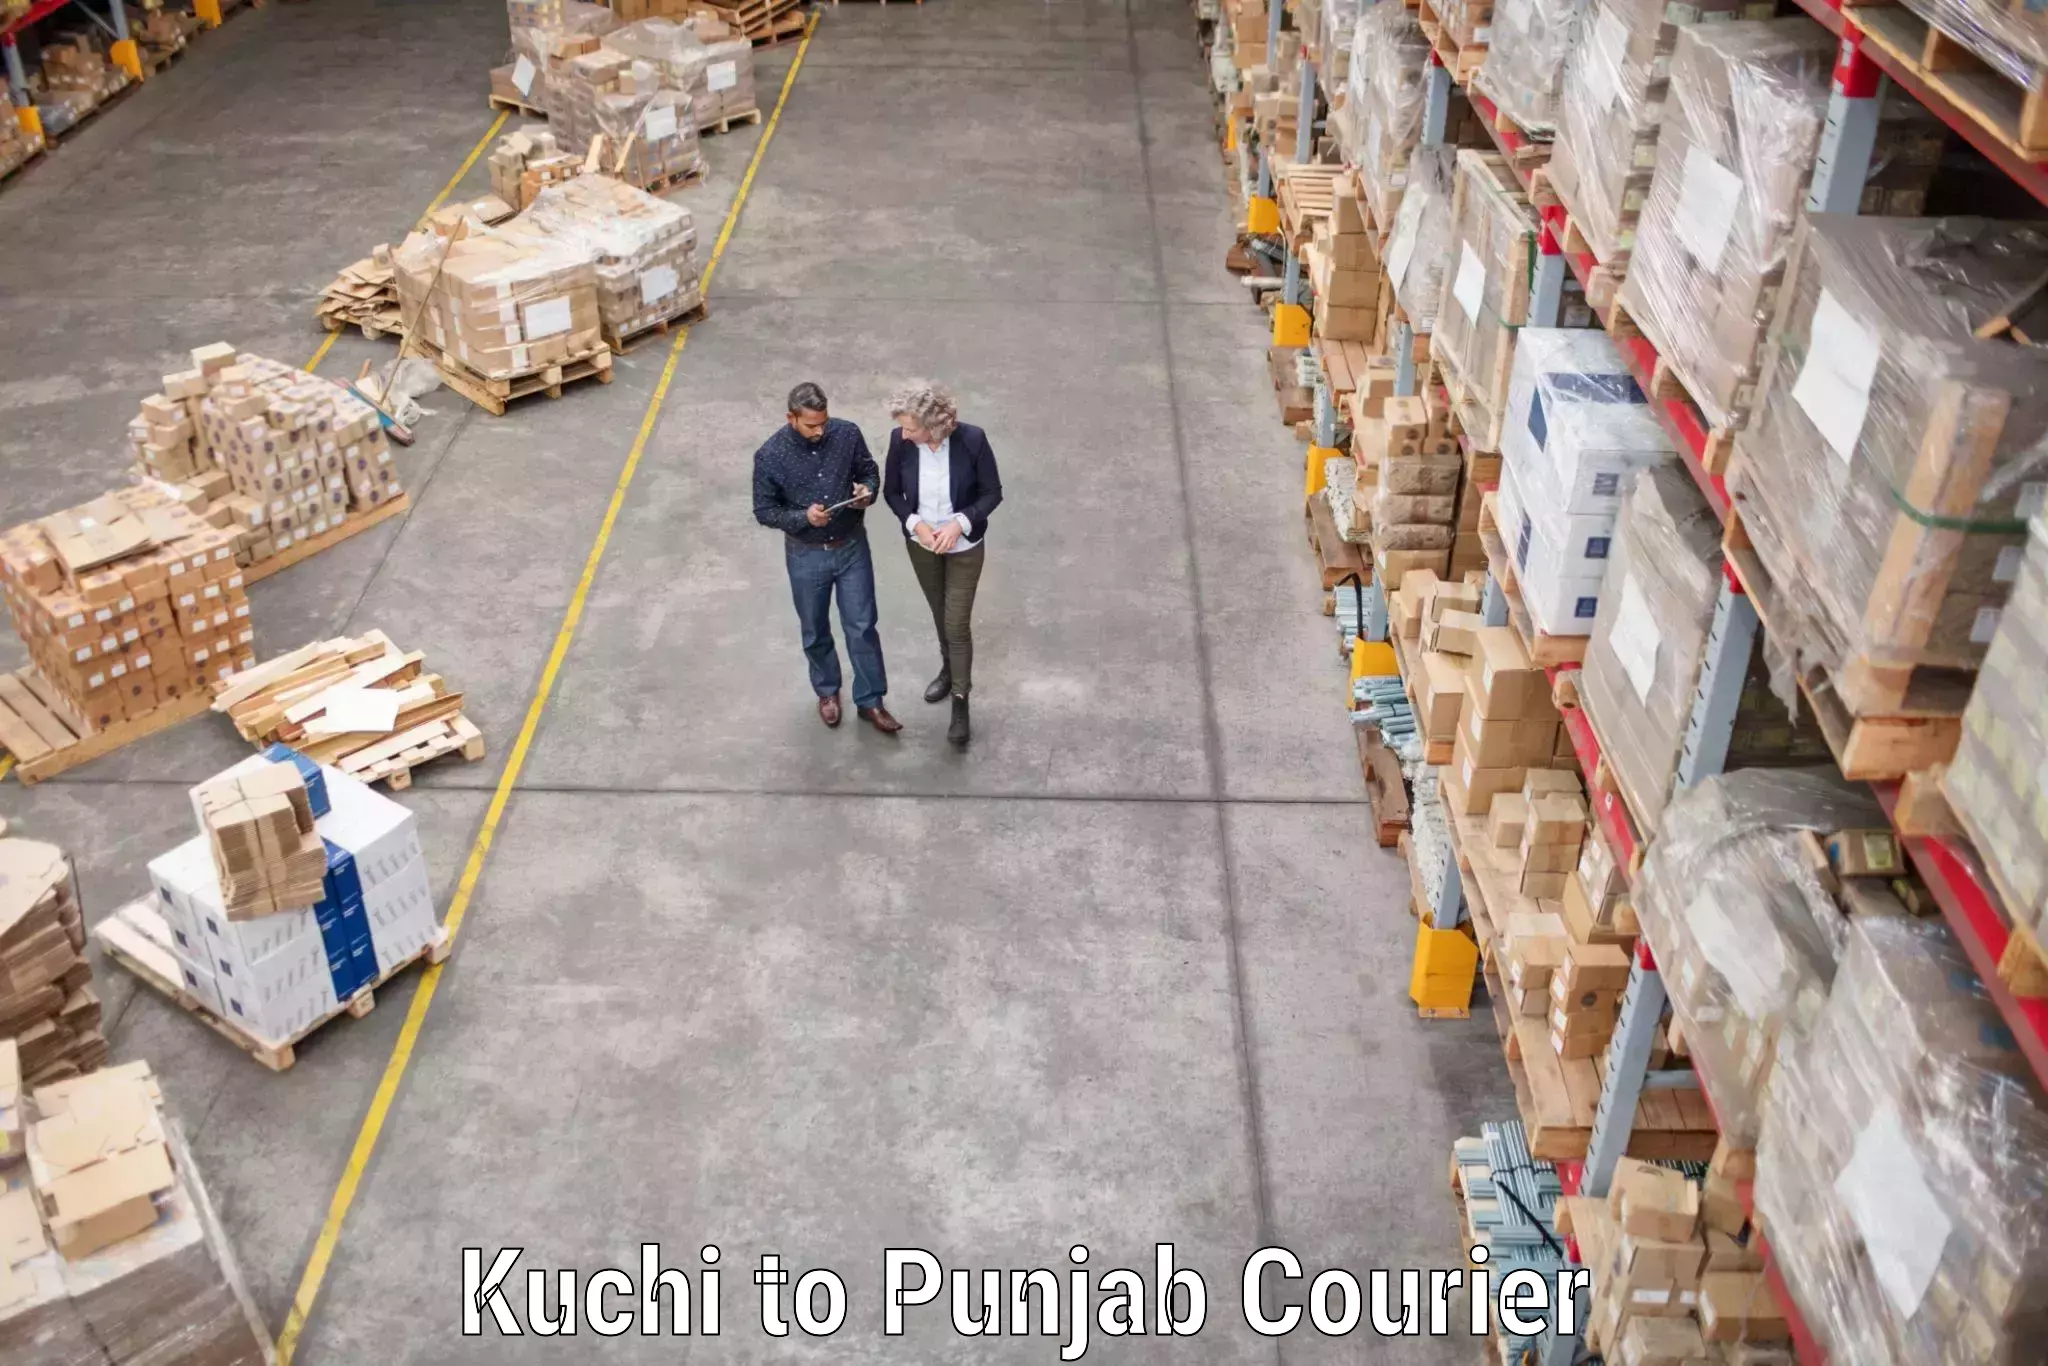 Furniture transport specialists Kuchi to Central University of Punjab Bathinda